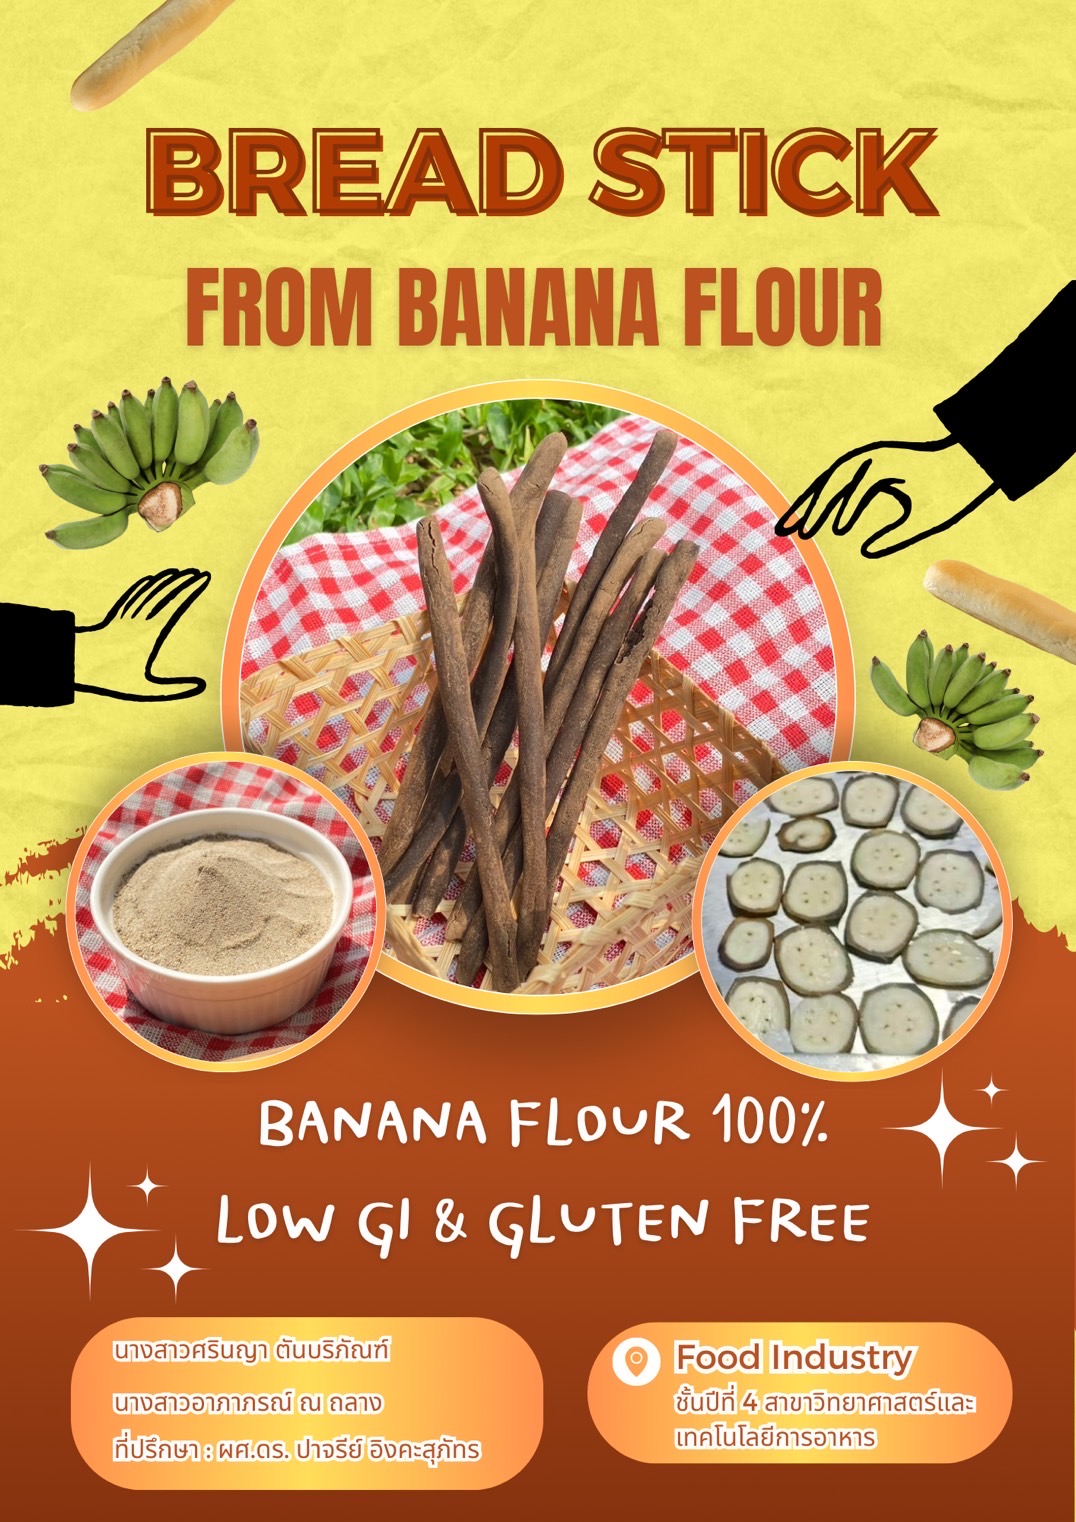 การพัฒนาผลิตภัณฑ์ขนมปังขาไก่ทดแทนแป้งสาลีด้วยแป้งกล้วย